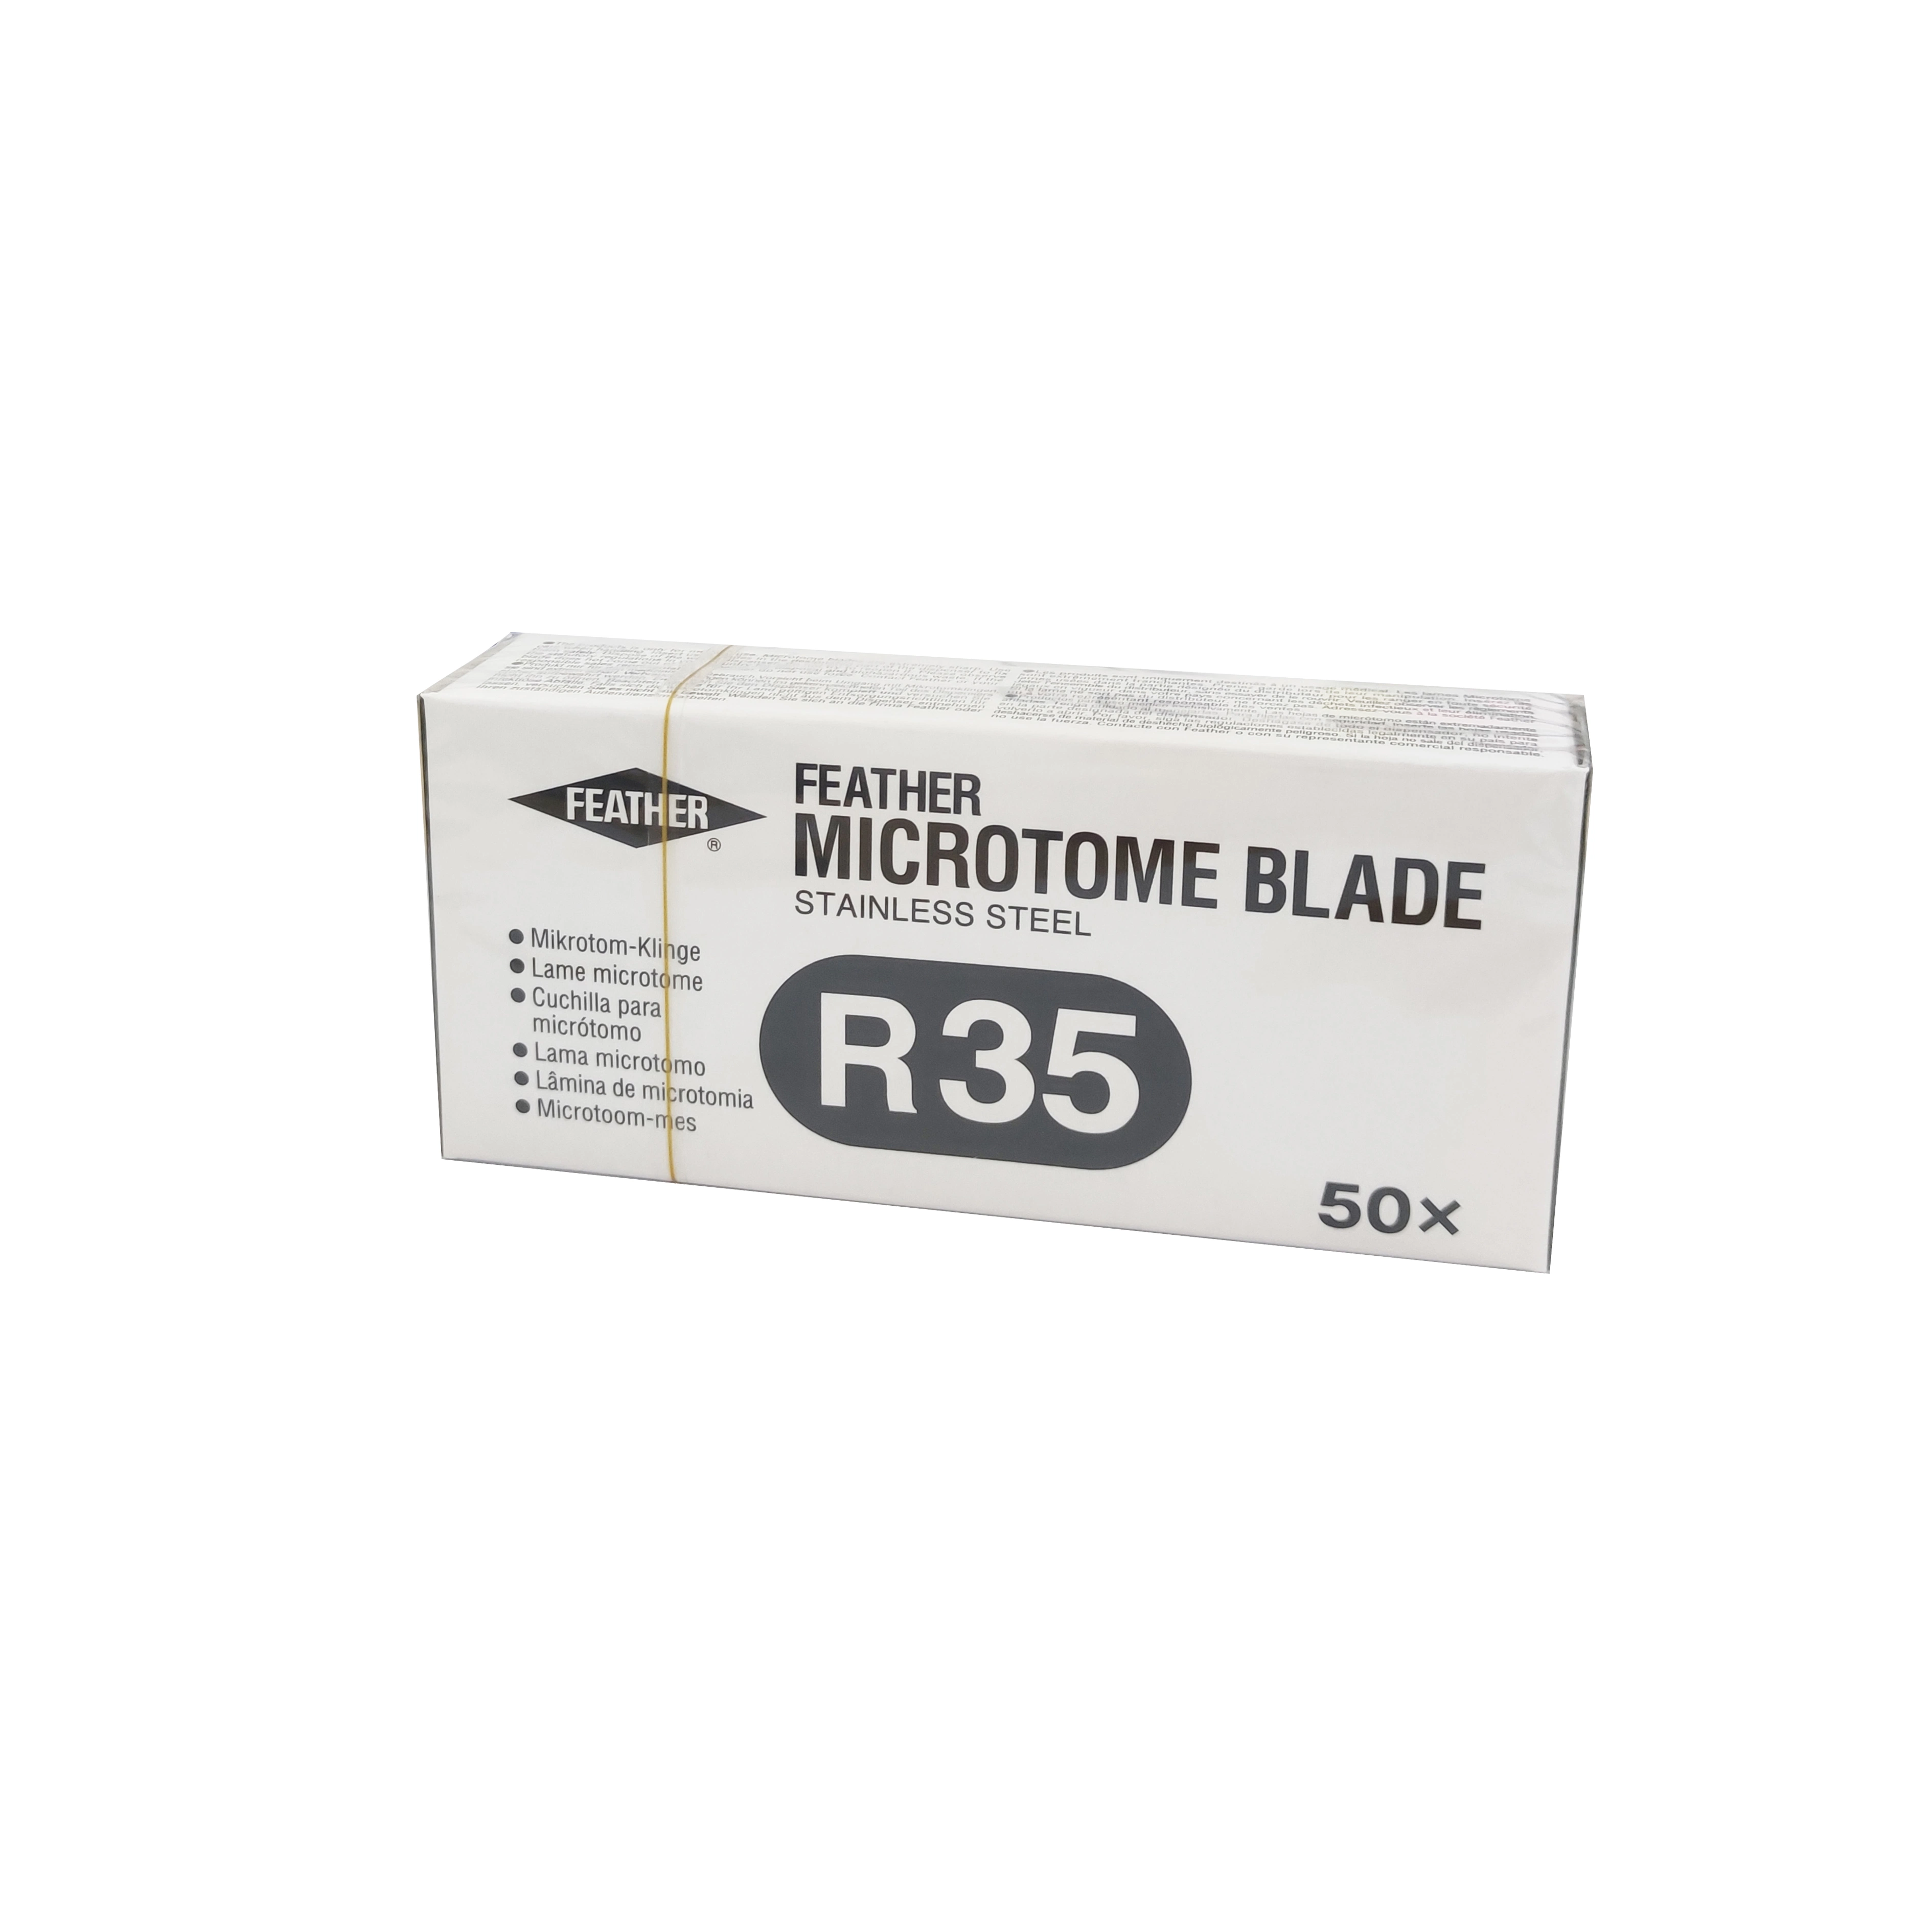 Расходные материалы High-Quality пуховые Microtome Blade для лабораторного применения